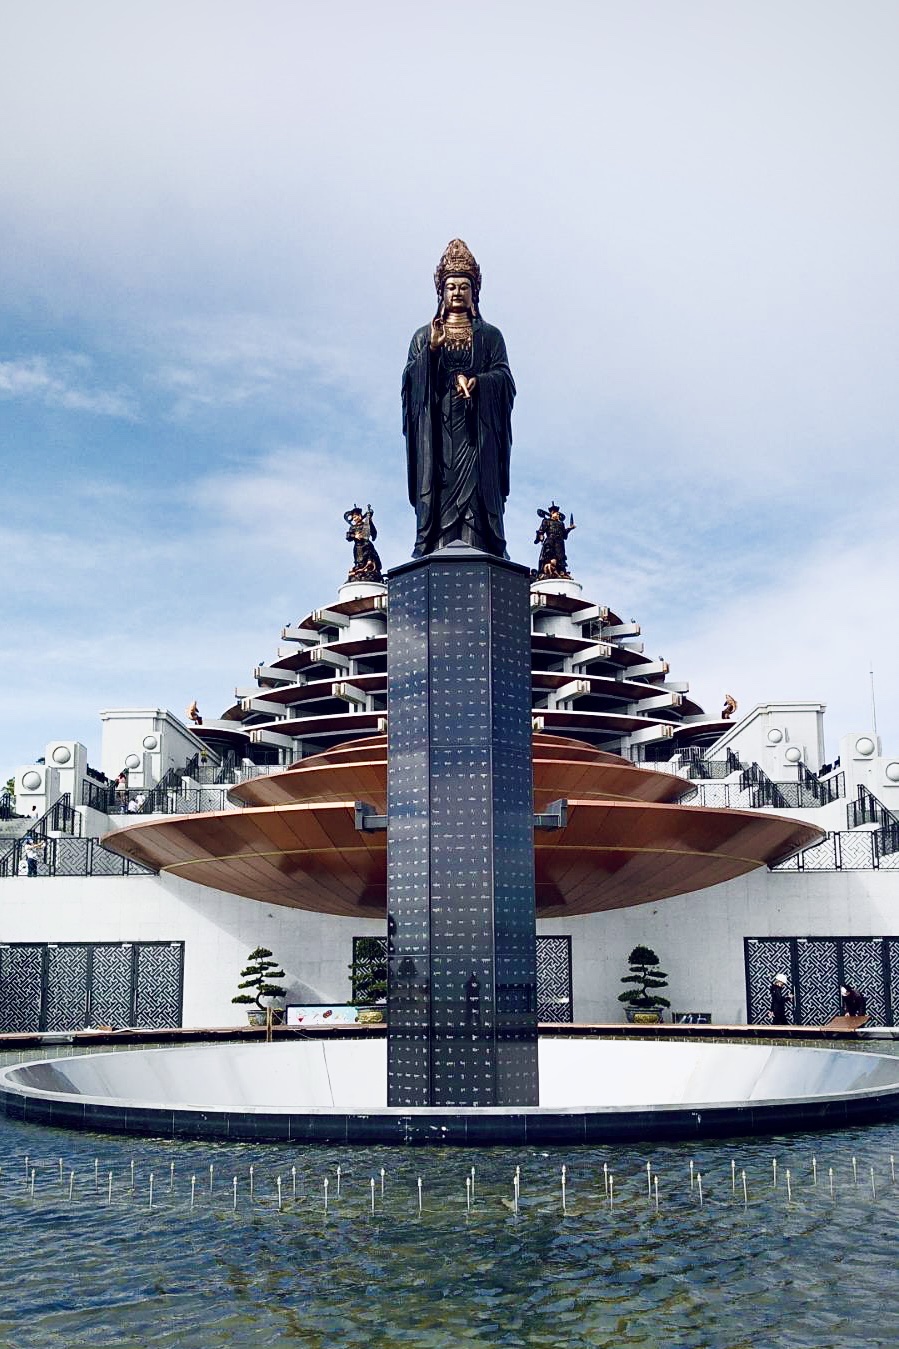 Cột kinh điêu khắc tâm kinh Bát Nhã ngay tại trung tâm quần thể tâm linh đỉnh núi Bà Đen